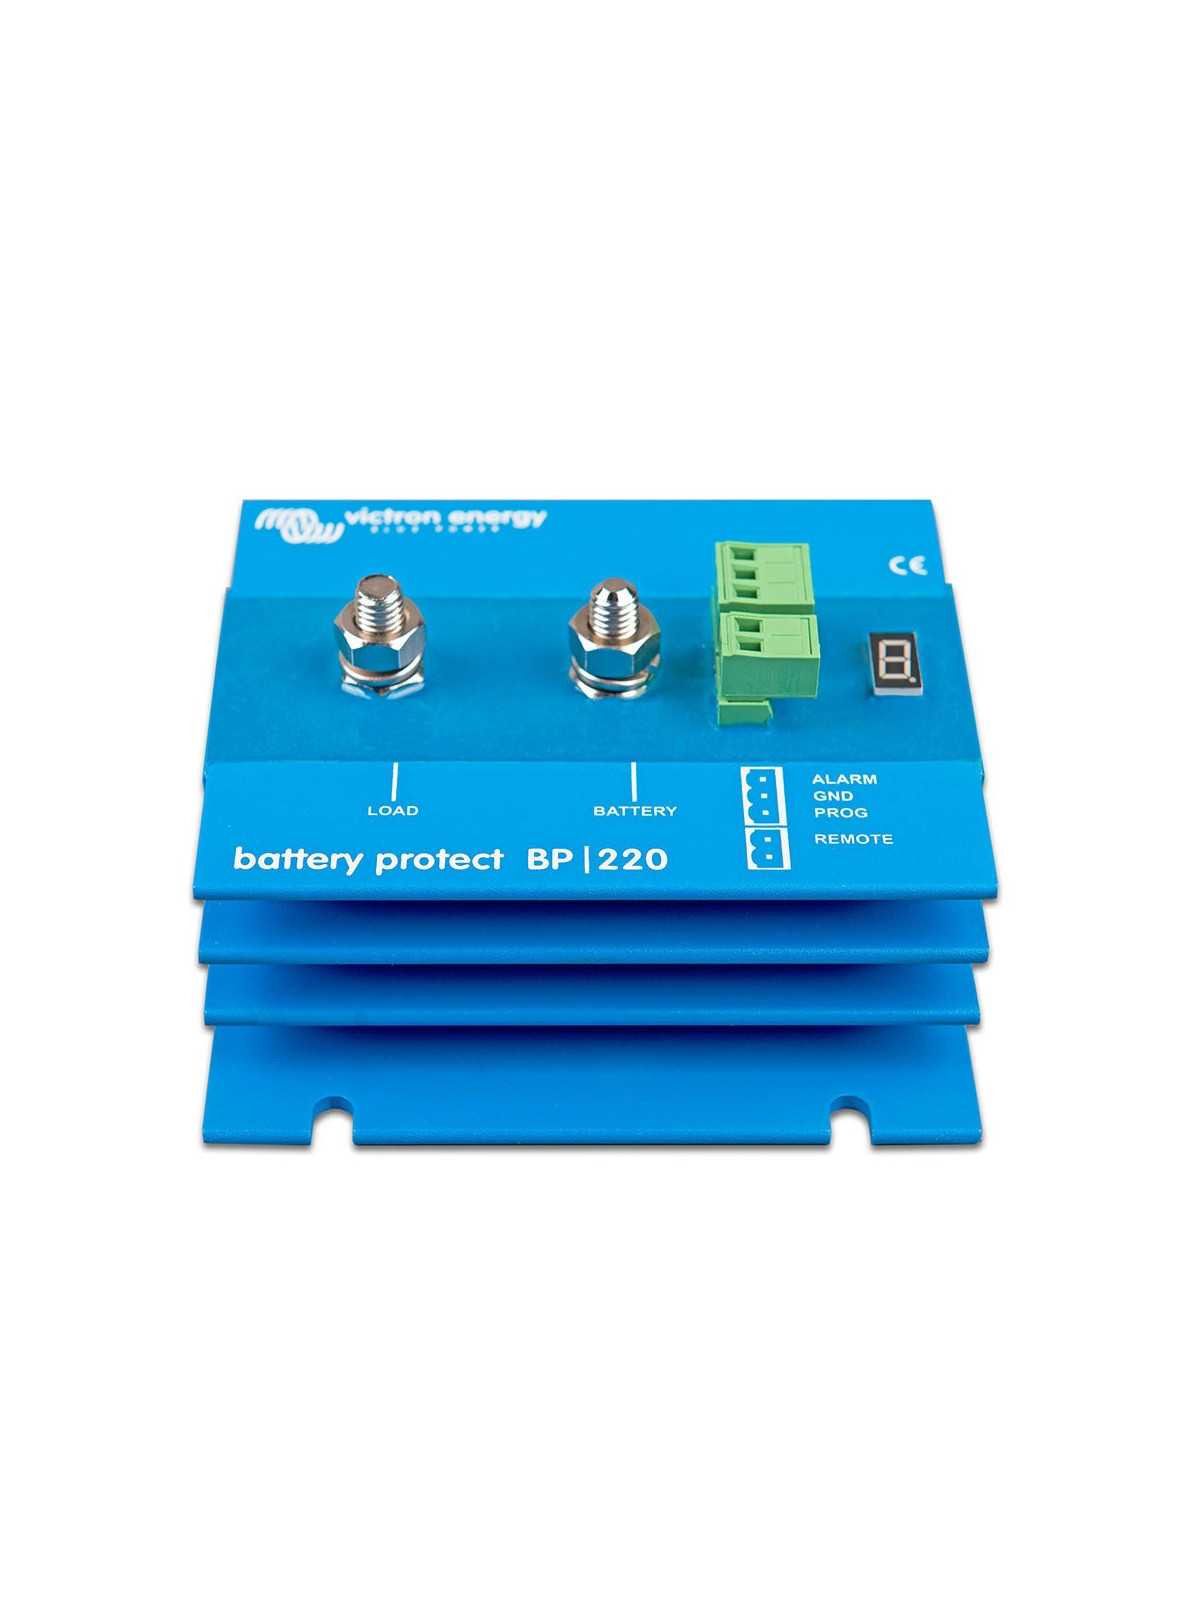 Cargador de bateria solar 12V 5A IP65 Victron Blue Smart + Conector CC